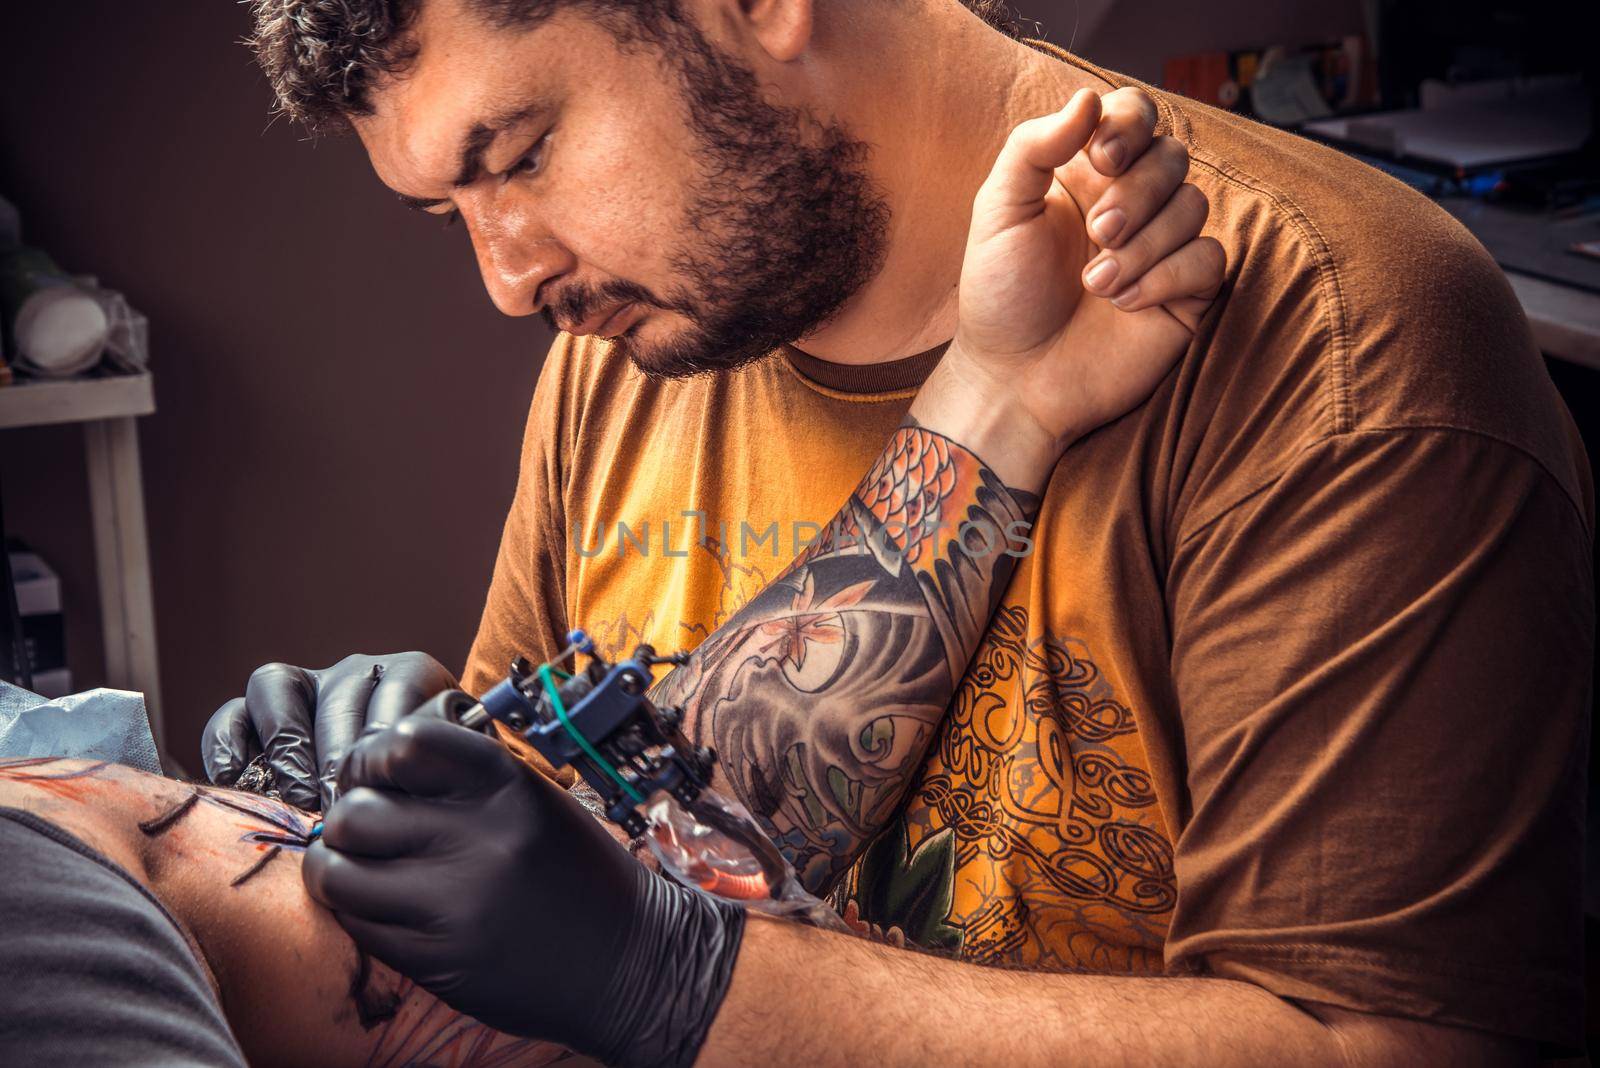 Professional tattooist showing process of making a tattoo in tattoo studio./Professional tattooist works in tatoo salon.